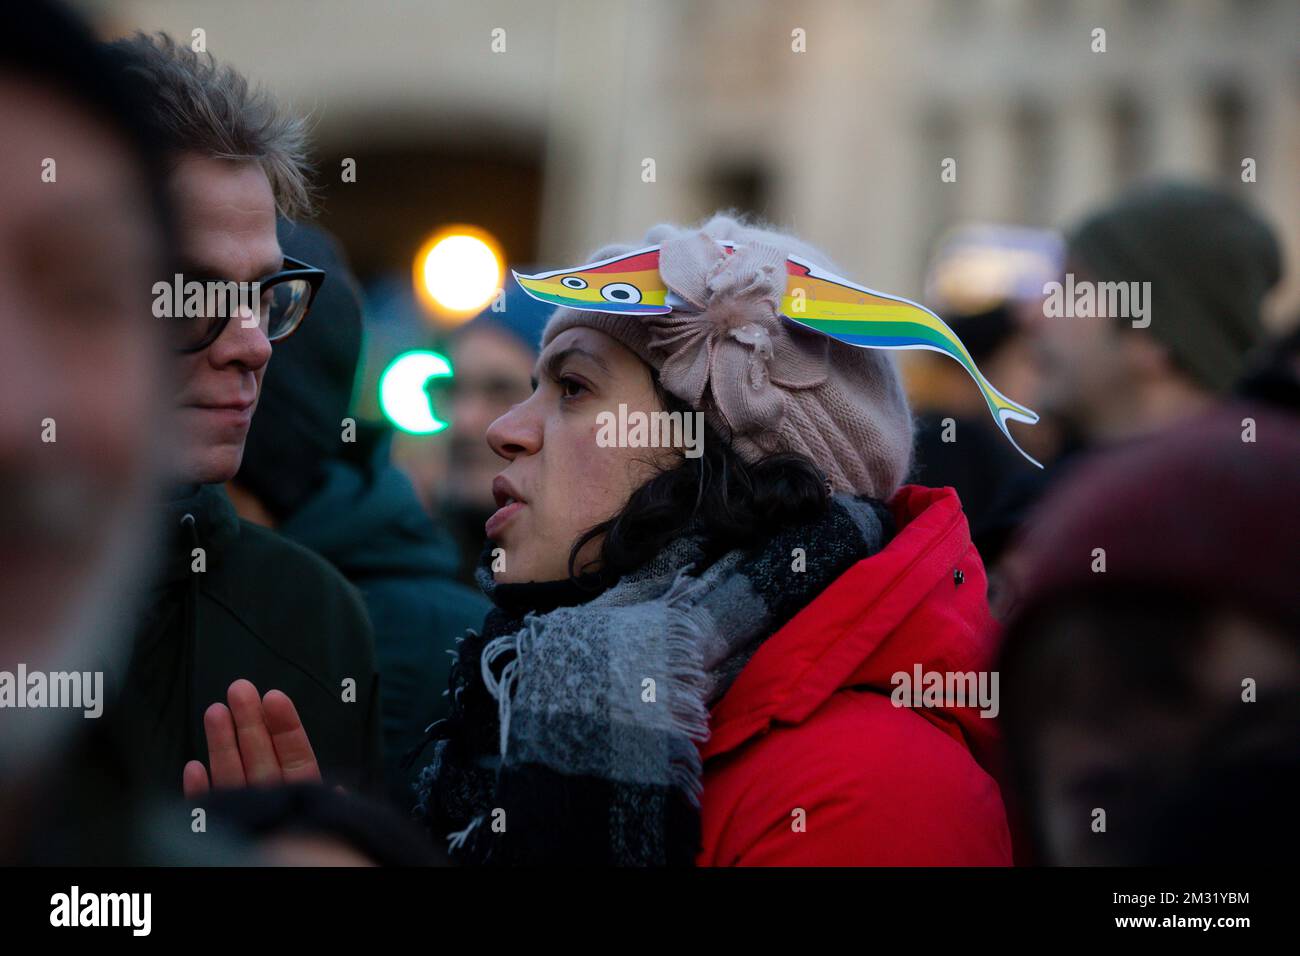 L'immagine mostra una dimostrazione del movimento sardino di sinistra, sabato 14 dicembre 2019 a Bruxelles. Il movimento Sardine è stato lanciato in Italia come protesta contro il partito della Lega anti-immigrazione guidato da Salvini. FOTO DI BELGA NICOLAS MAETERLINCK Foto Stock